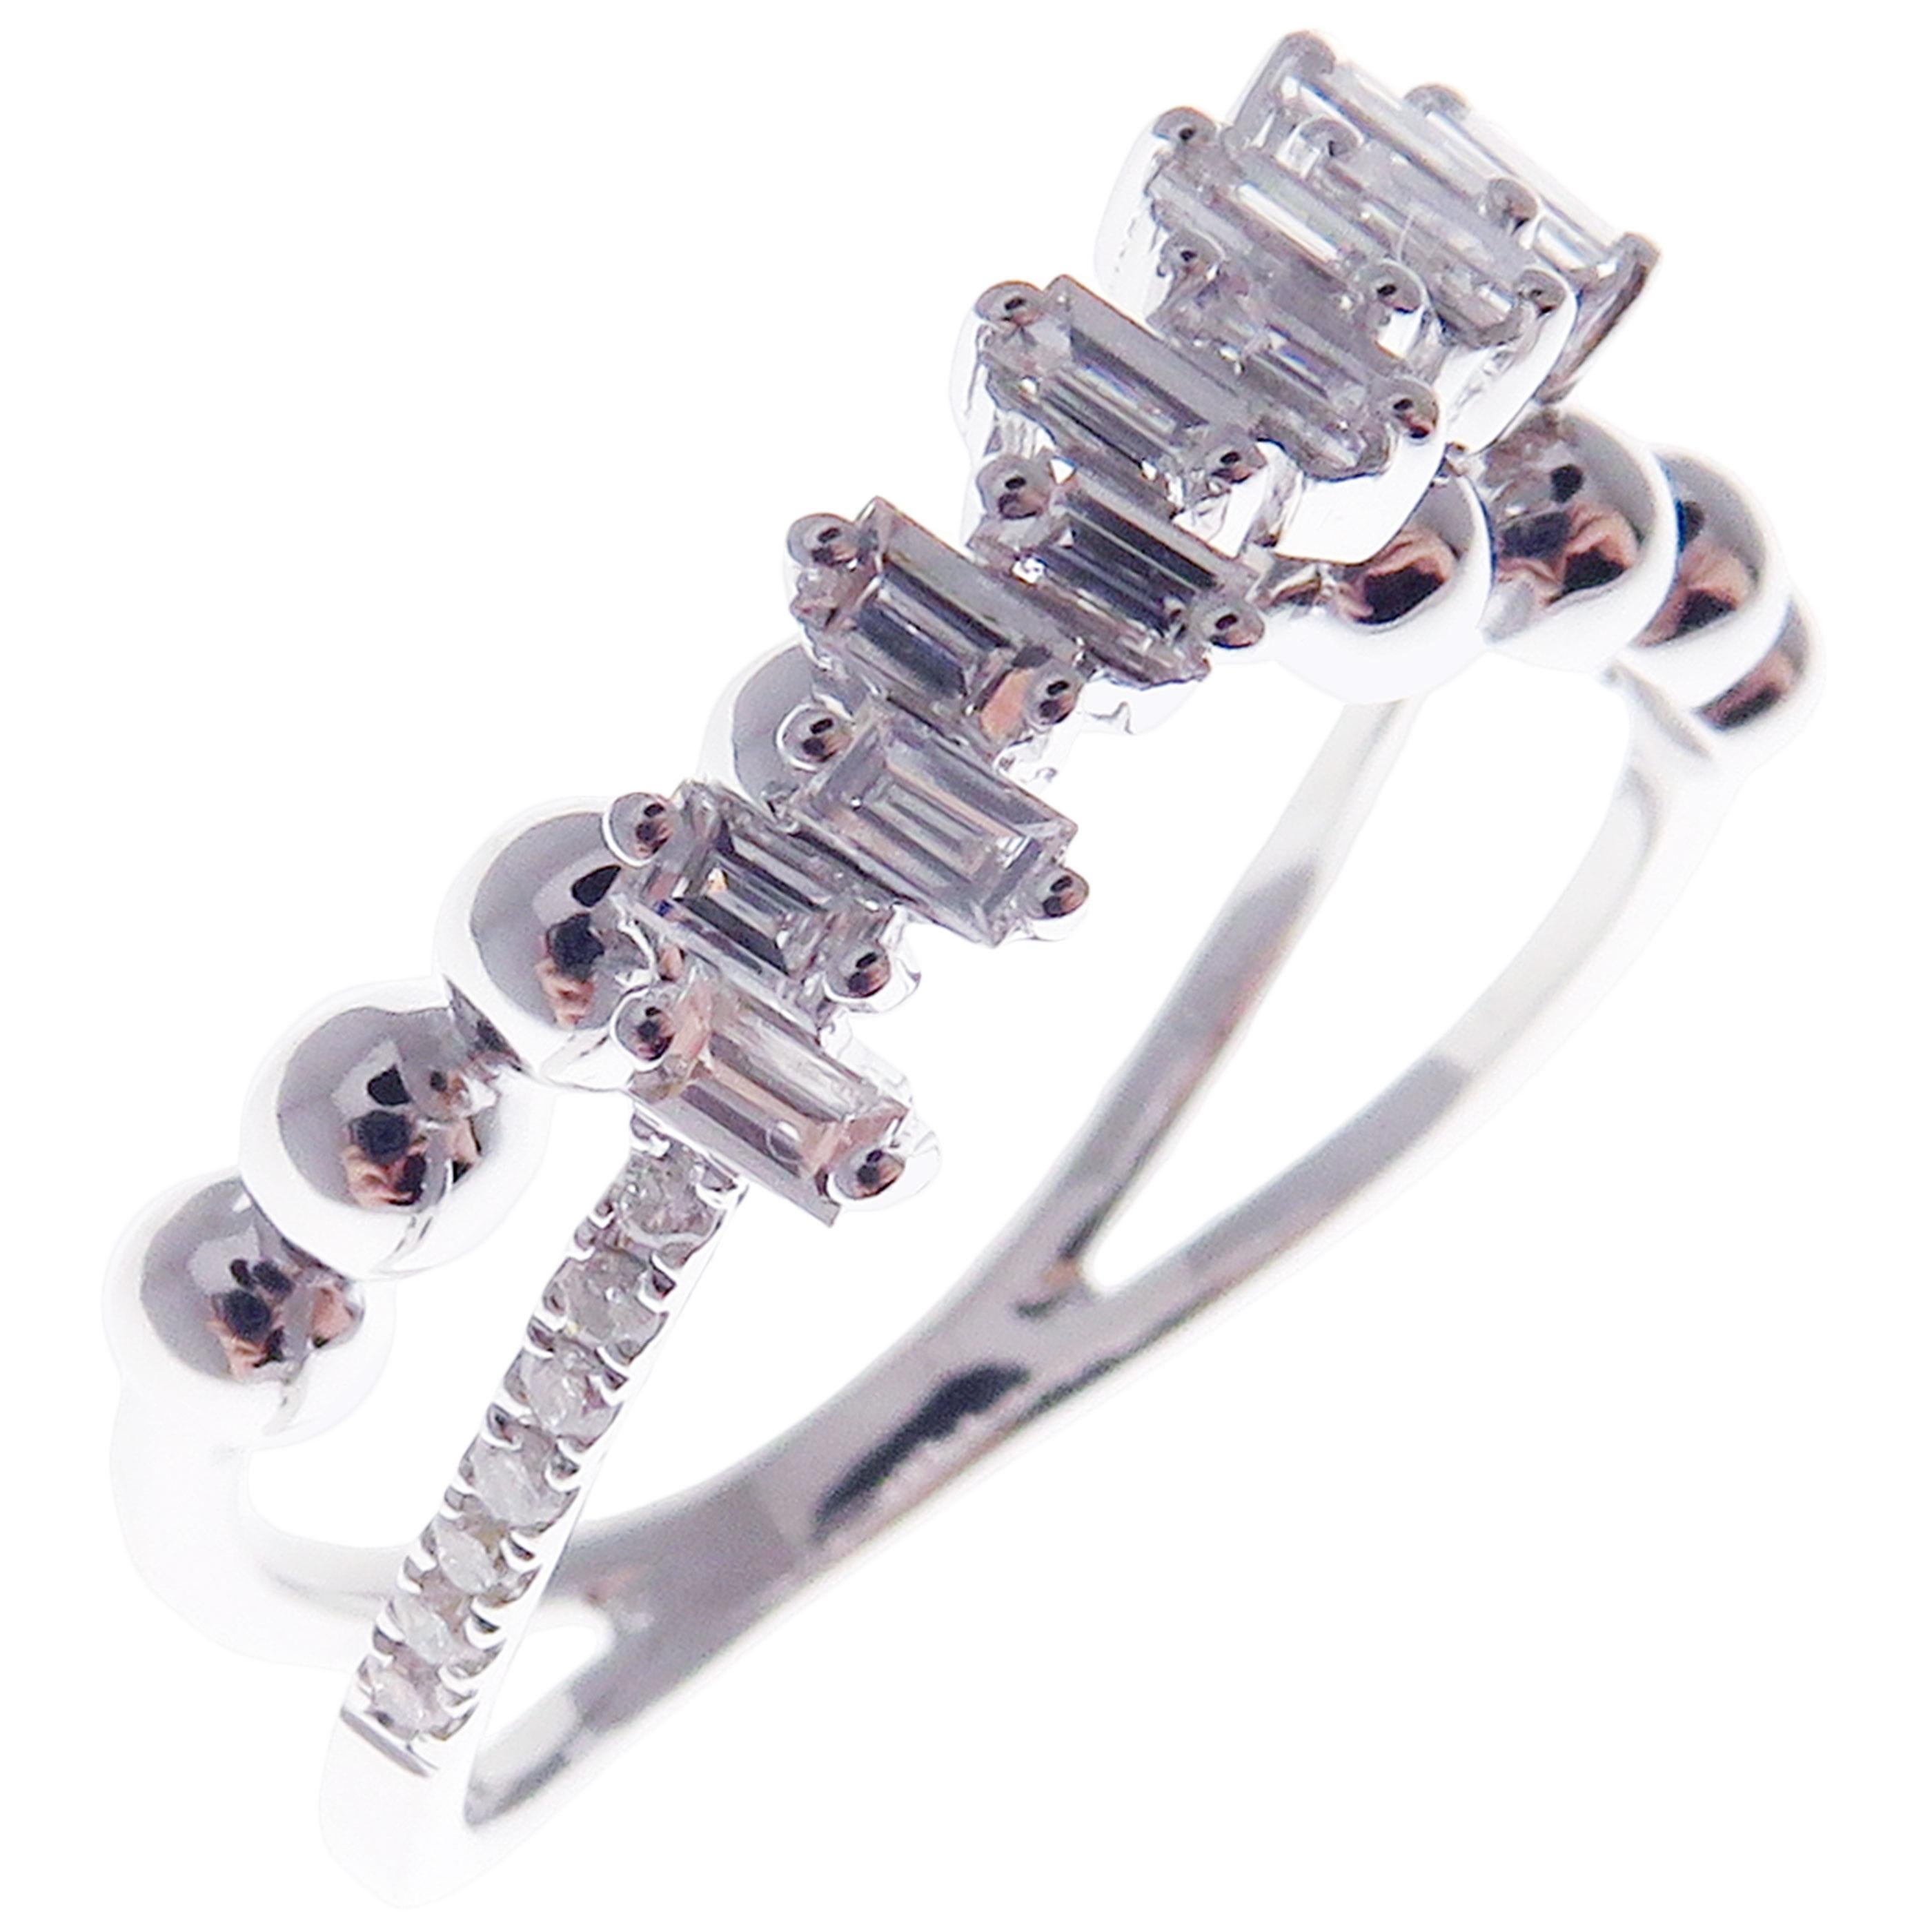 Dieser trendige, mehrschichtige X-Ring ist aus 18 Karat Weißgold gefertigt und mit 14 runden weißen Diamanten von insgesamt 0,07 Karat und 11 weißen Baguette-Diamanten von insgesamt 0,34 Karat besetzt.
Ungefähres Gesamtgewicht 3,07 Gramm.
Standard